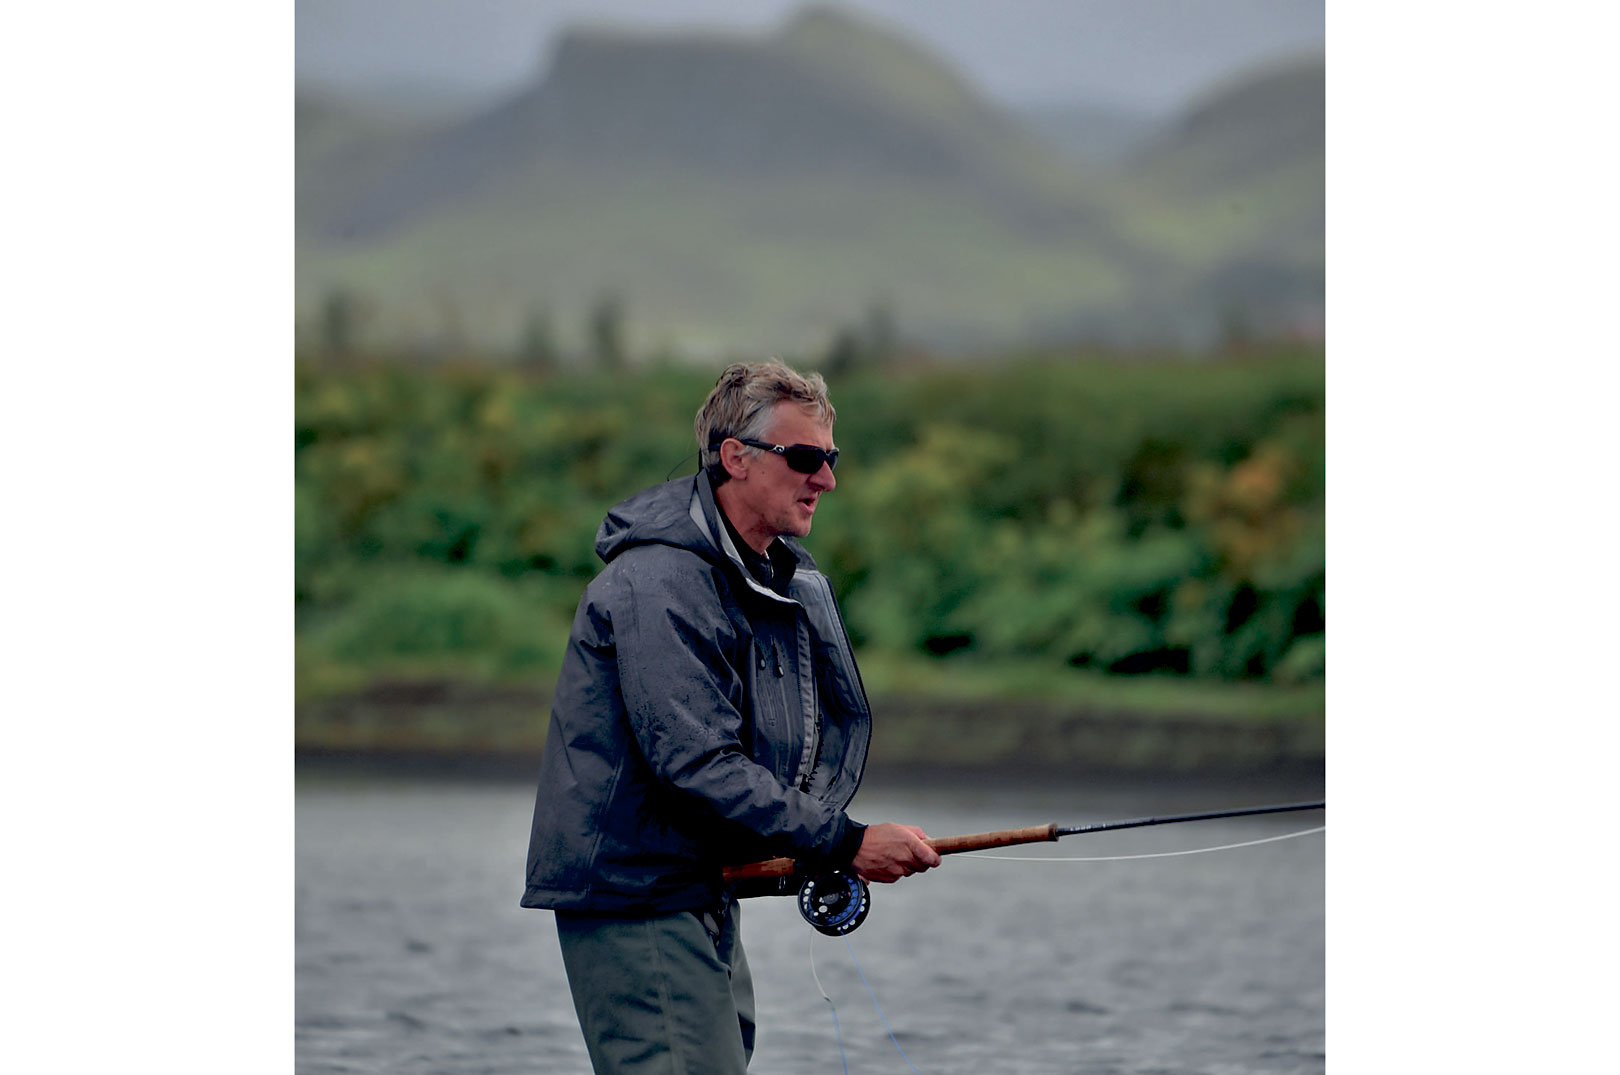 Let tohåndsudstyr er Arni Baldurssons foretrukne våben, når han fisker laks. Men han skalerer altid udstyret alt efter forholdene.